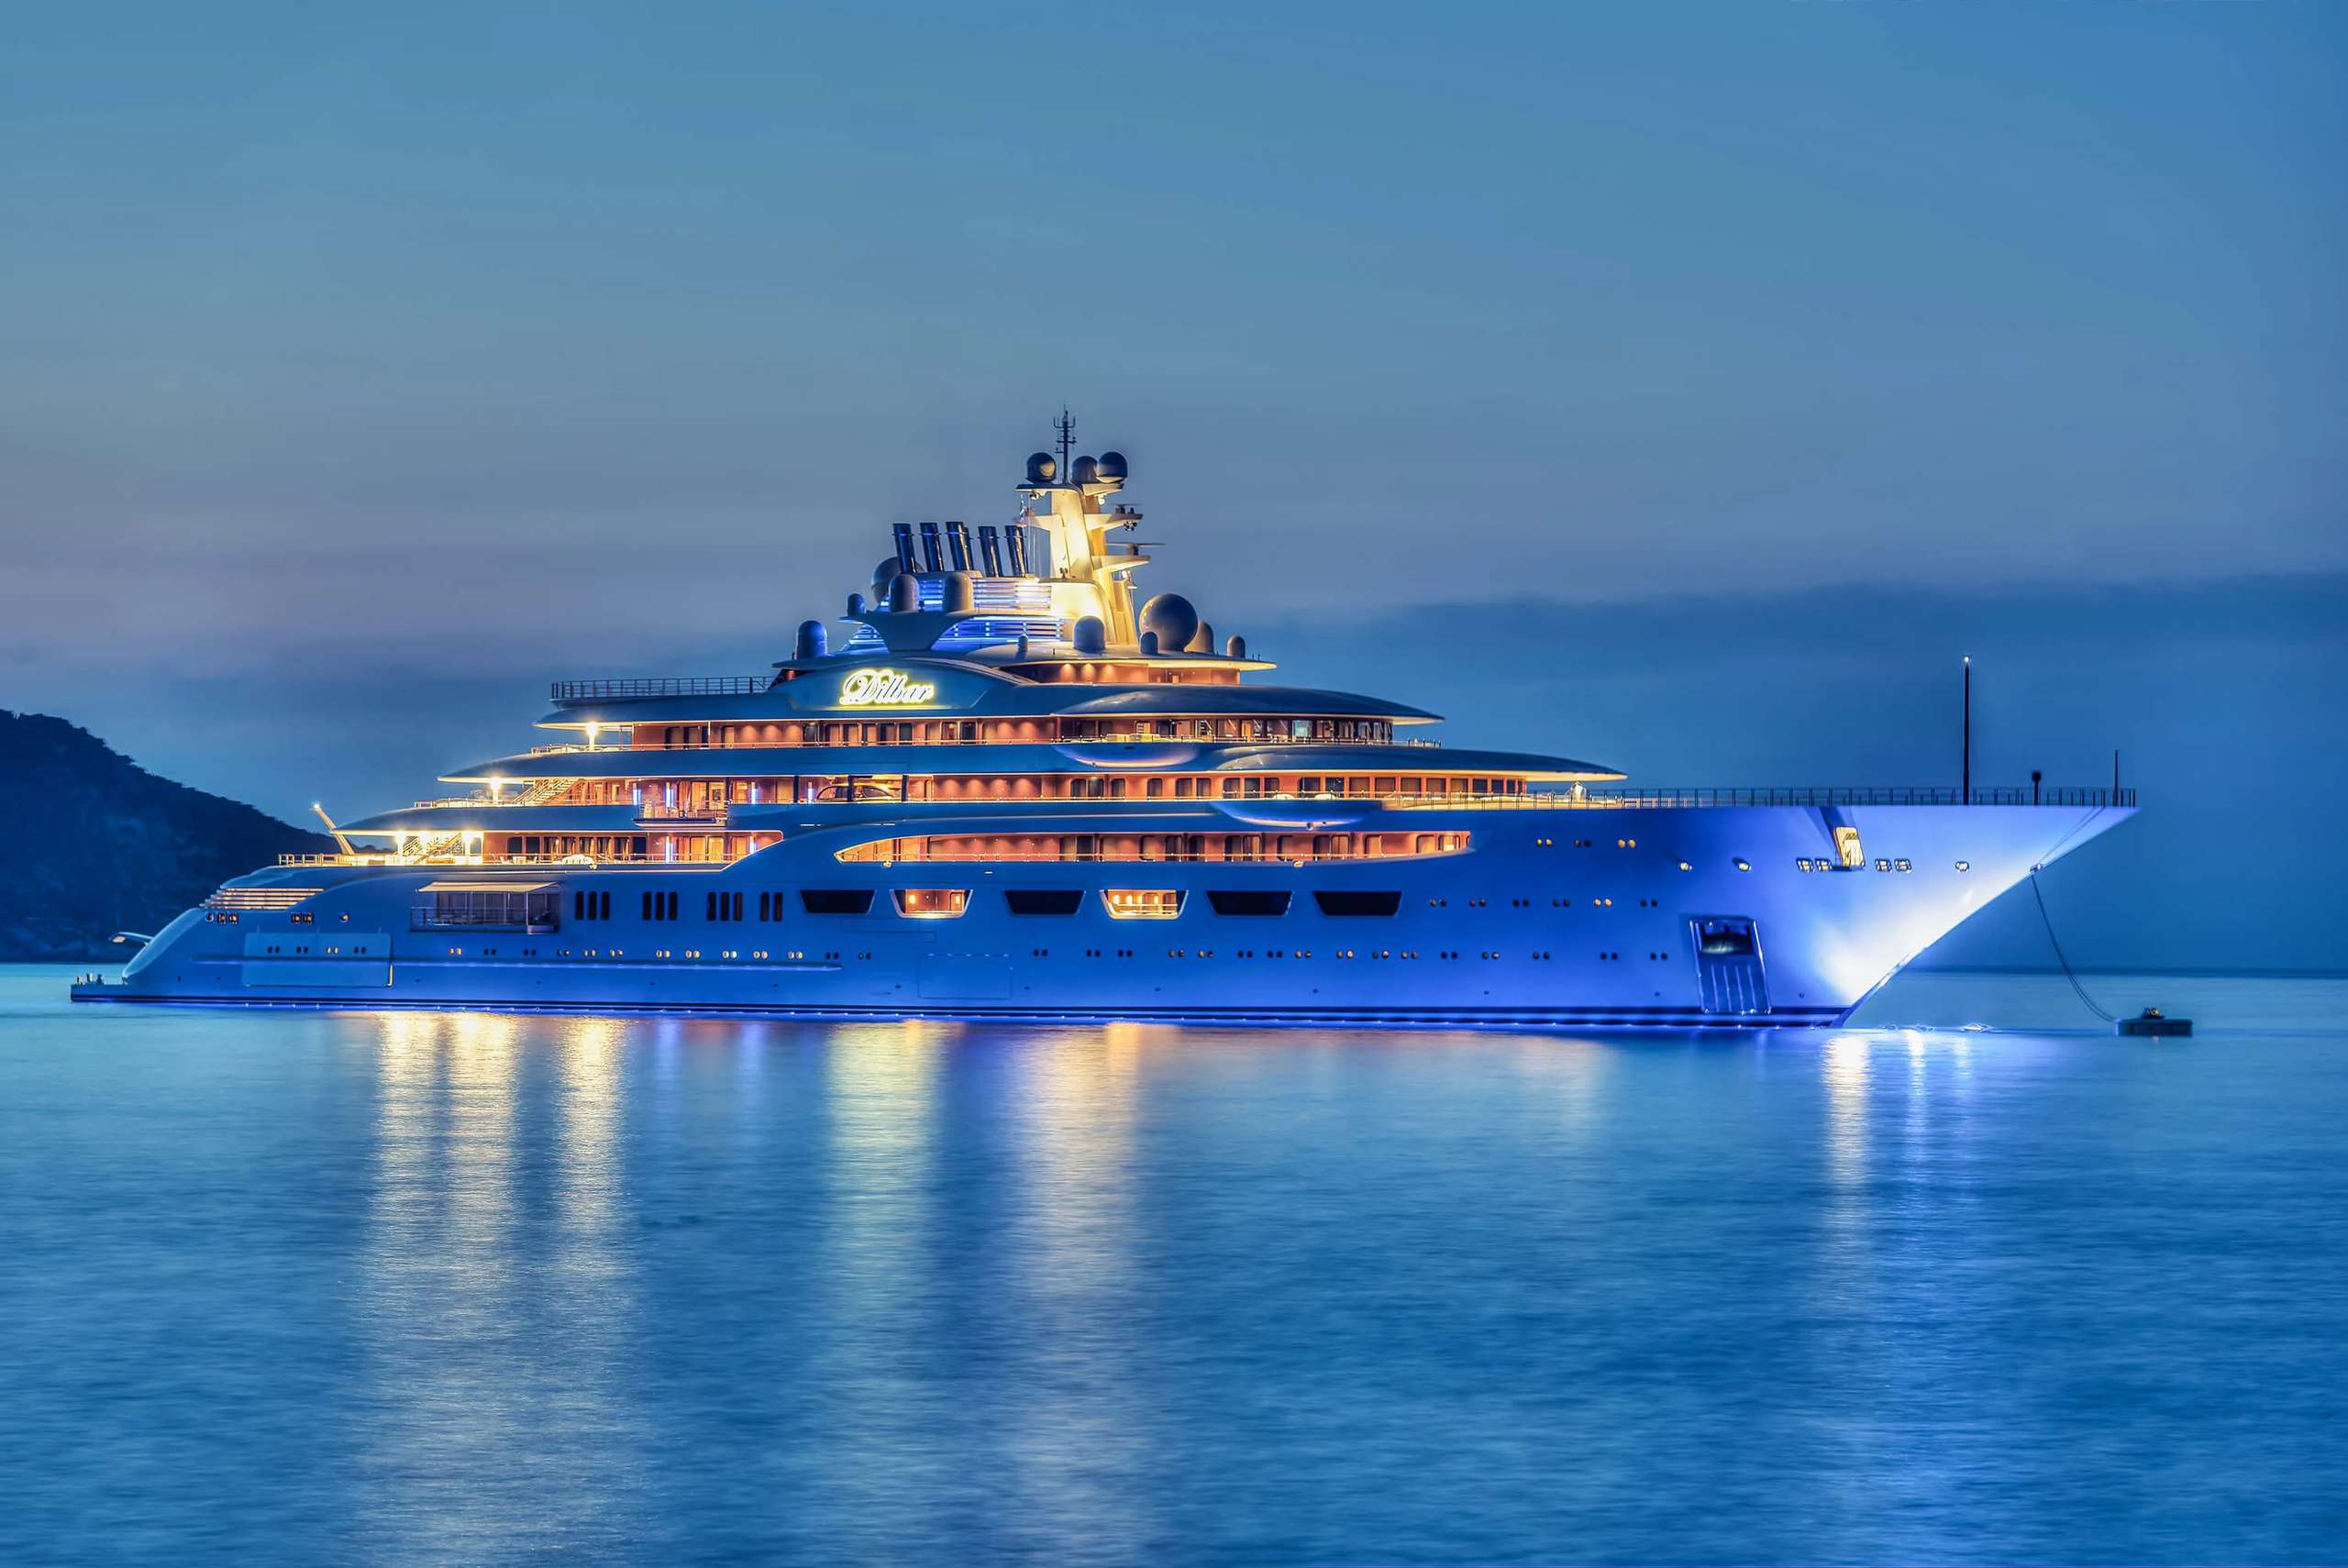 yacht under 100 million